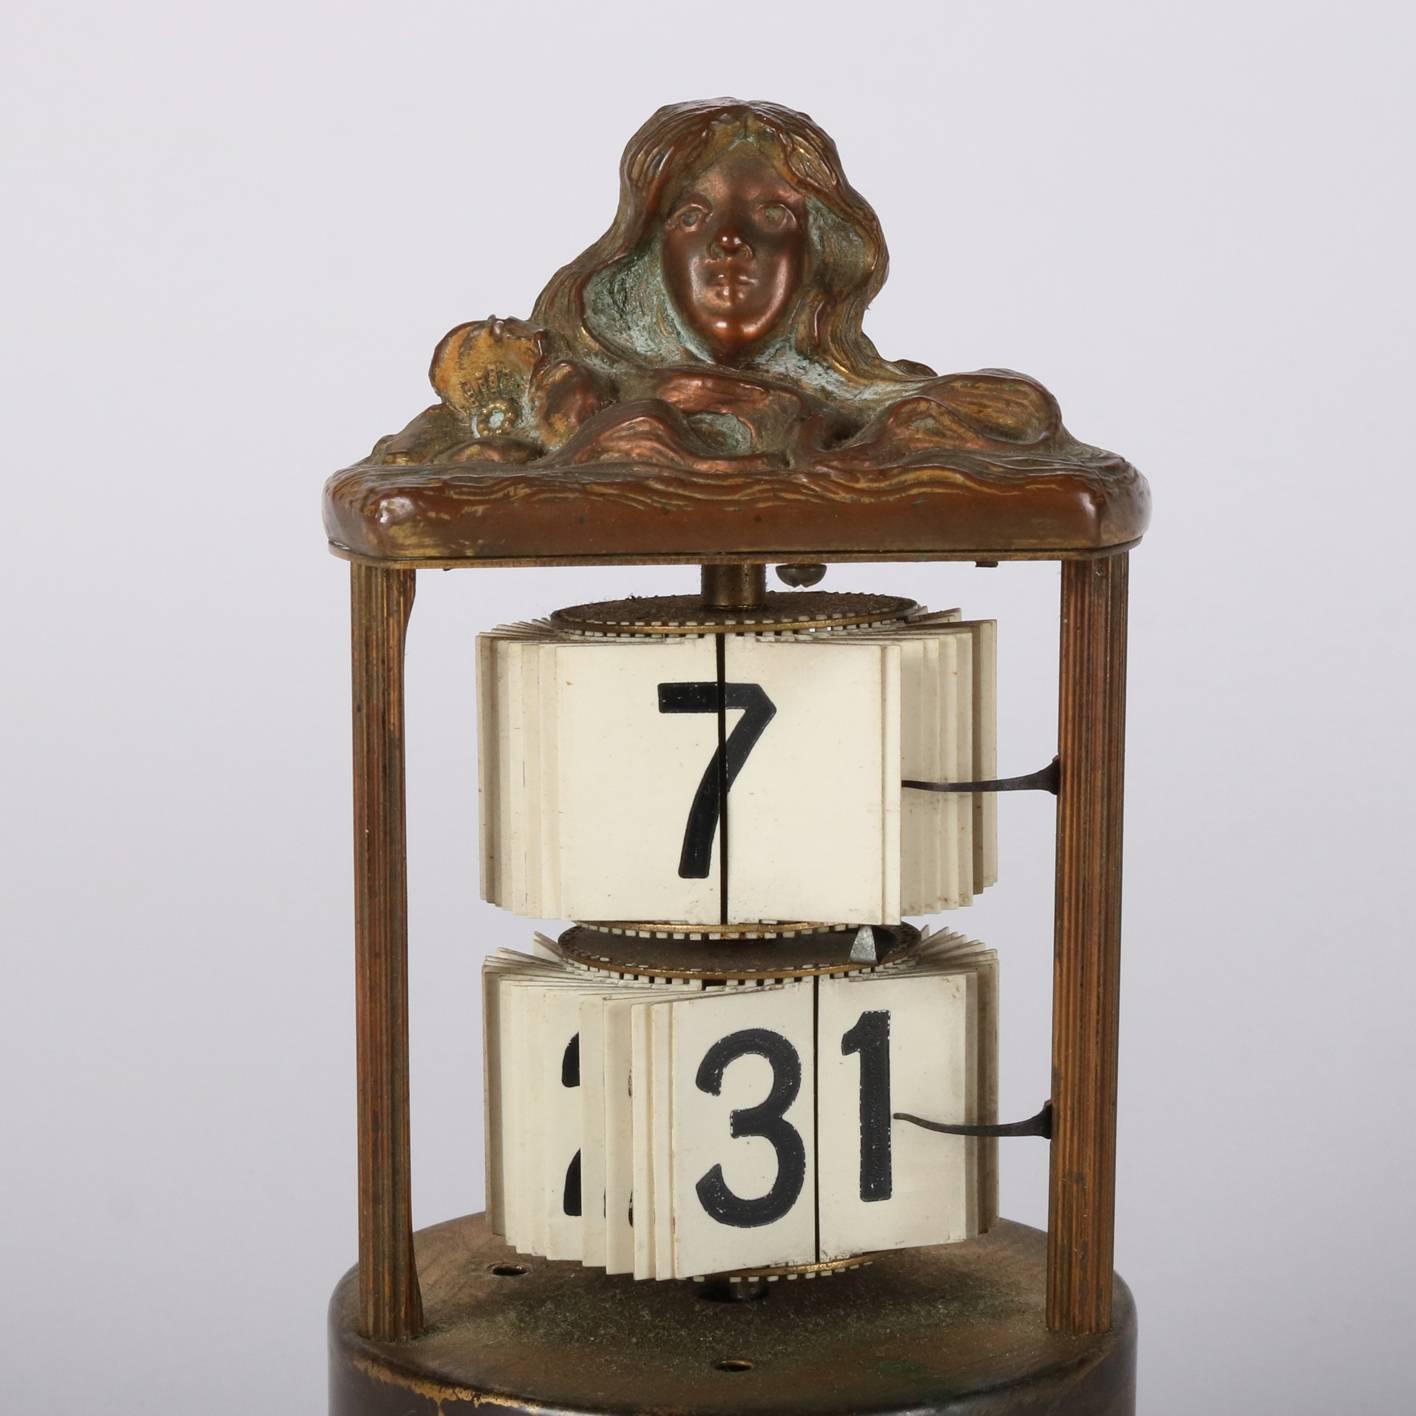 plato clock for sale